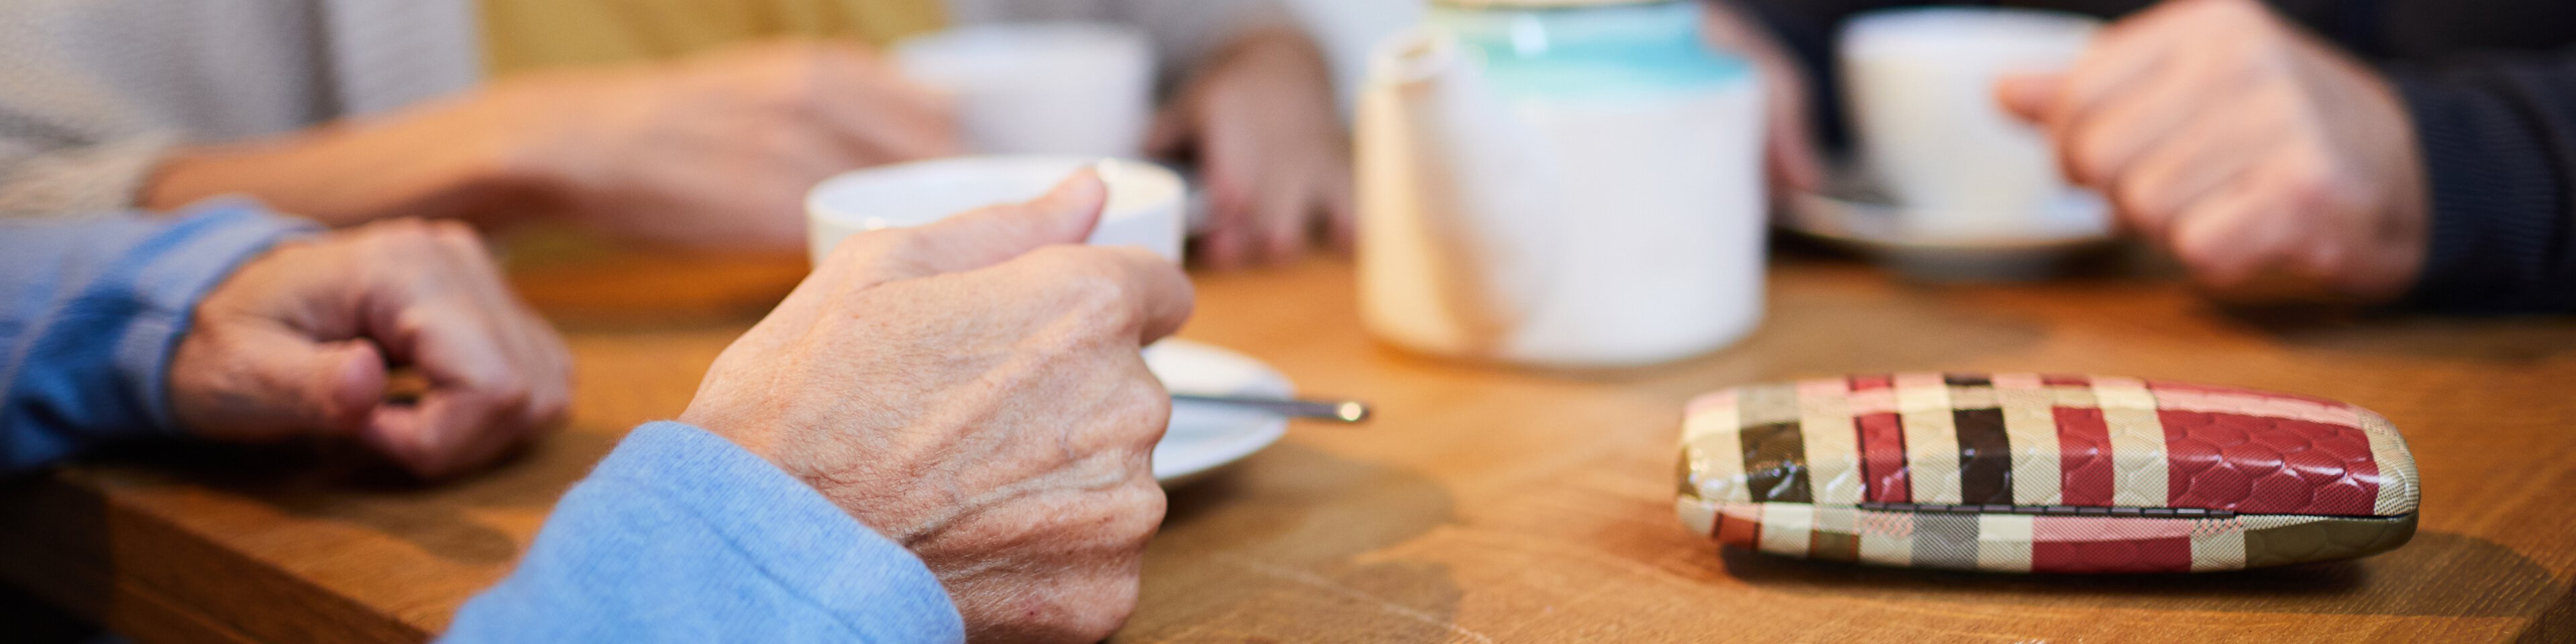 Ältere Menschen trinken zusammen Kaffee | © adobestock_pressmaster_235541811